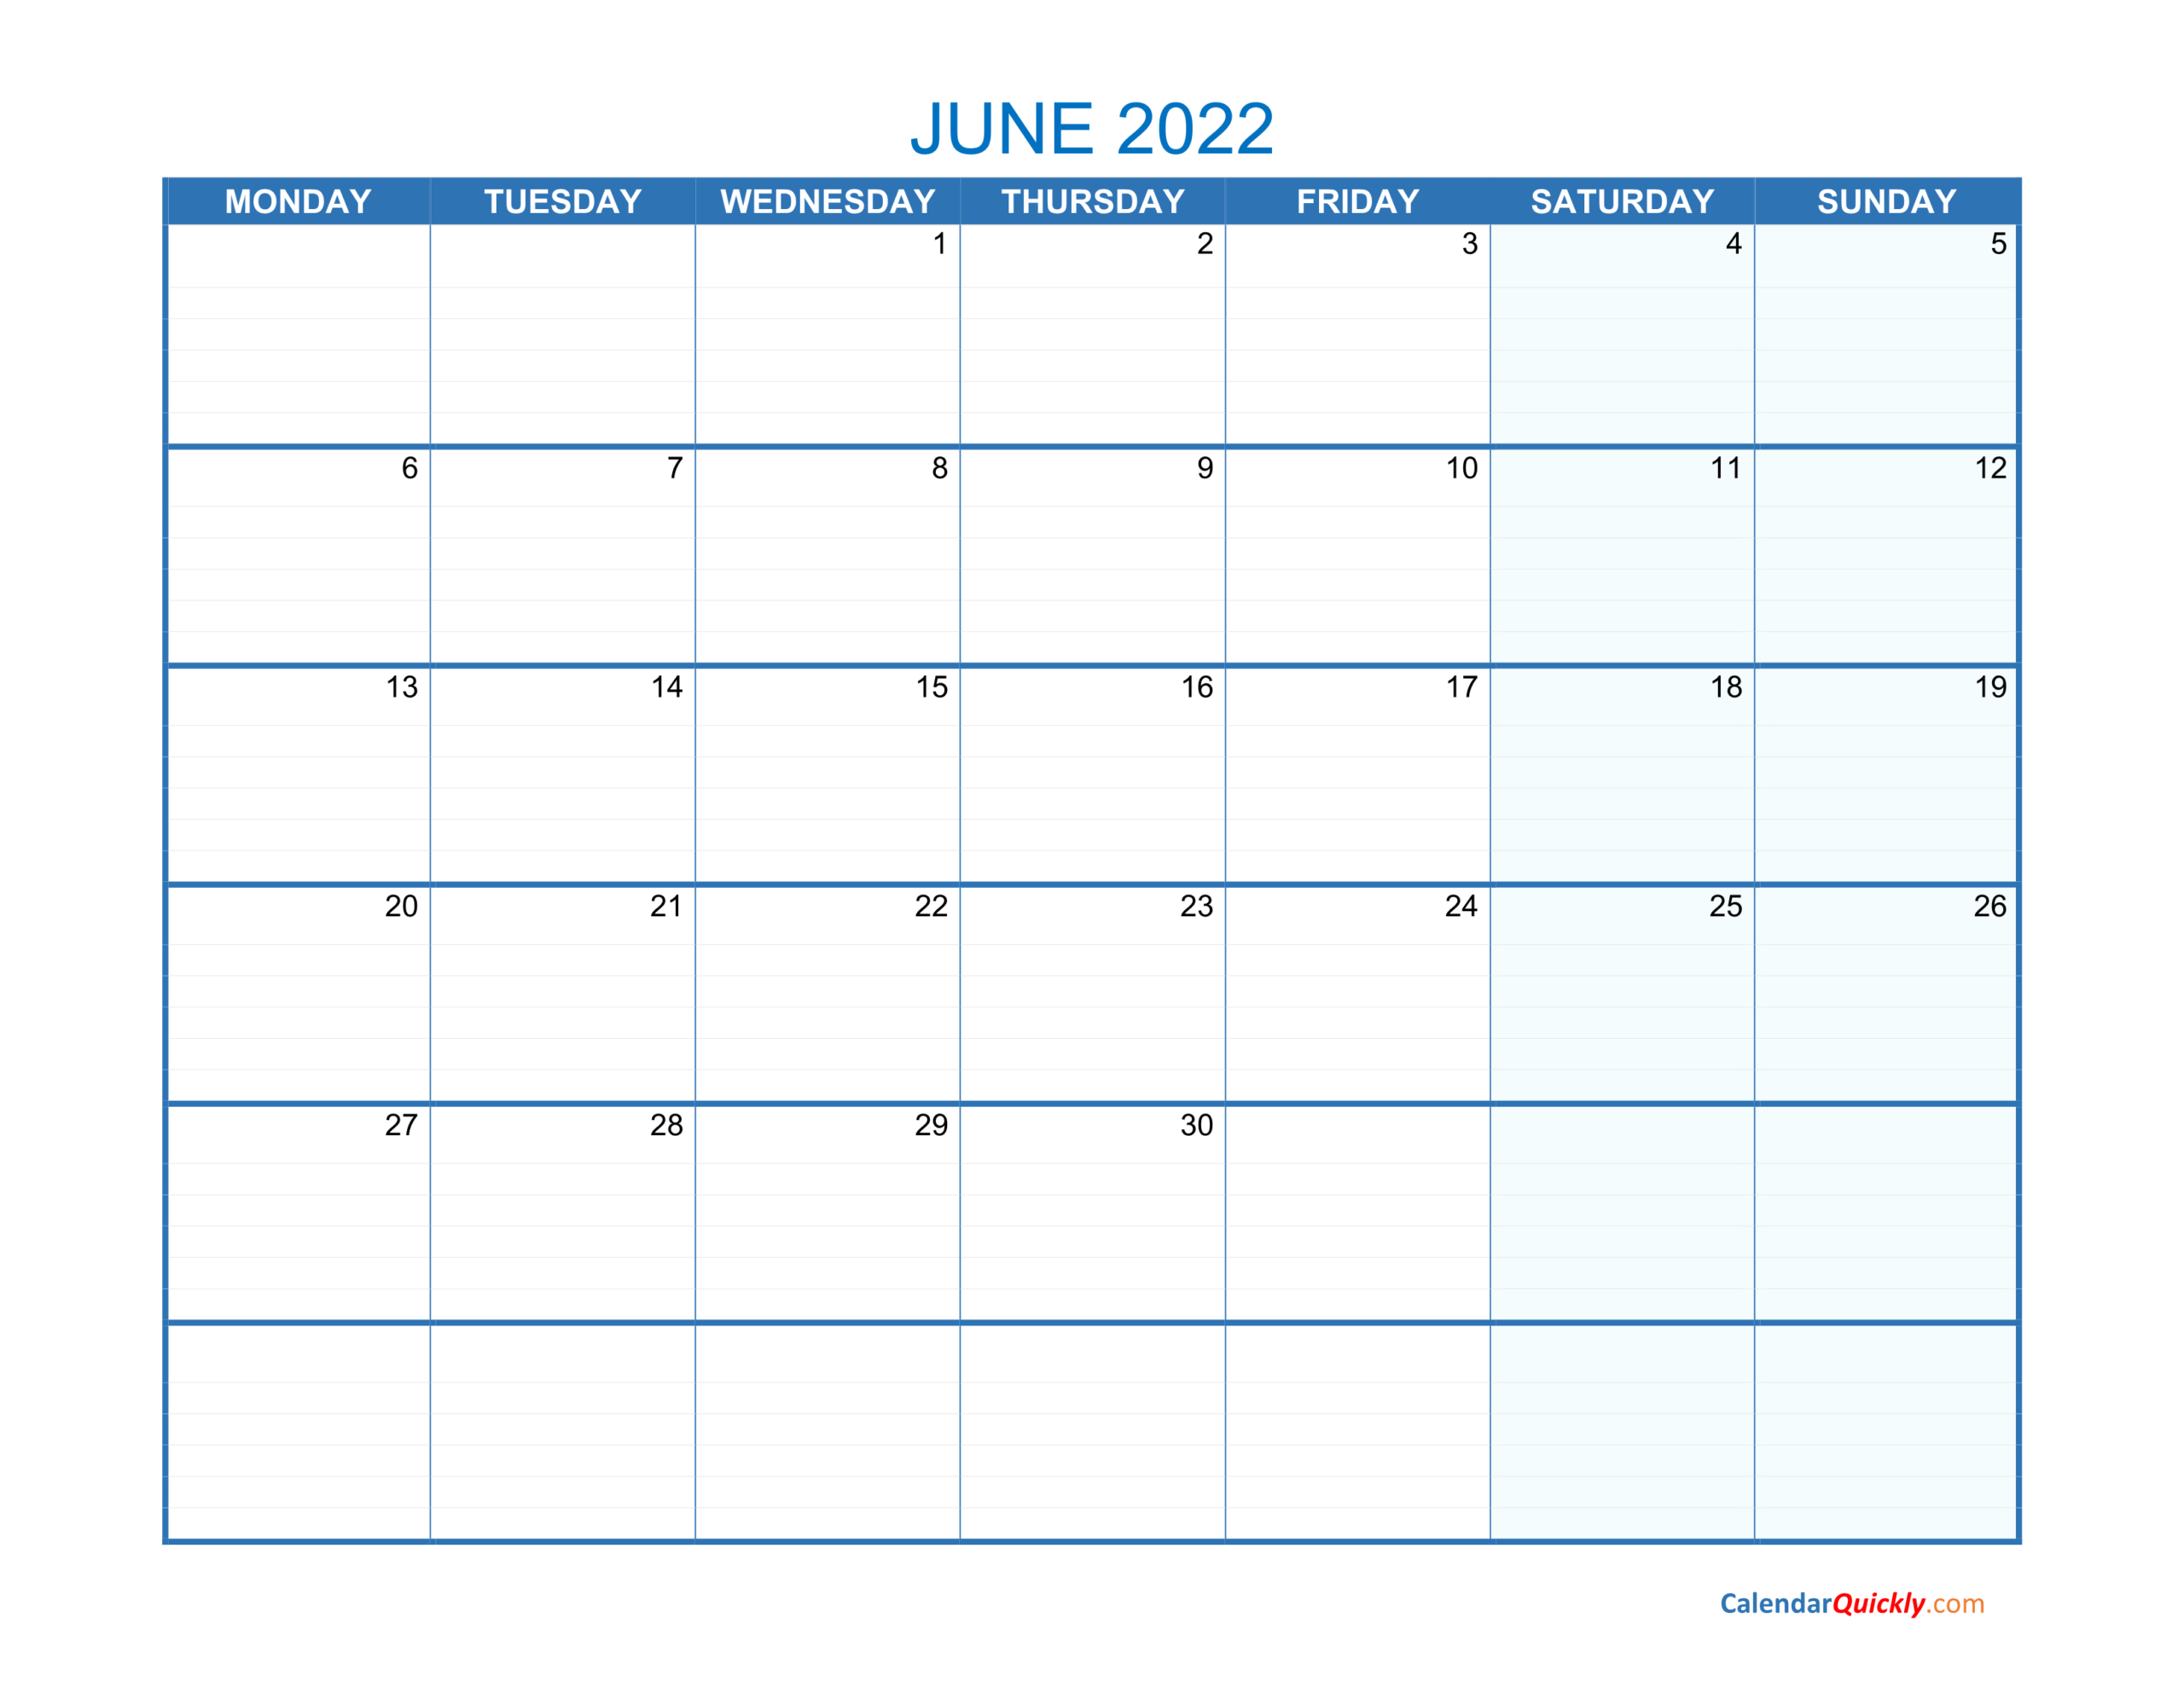 June Monday 2022 Blank Calendar | Calendar Quickly  January Thru June 2022 Calendar